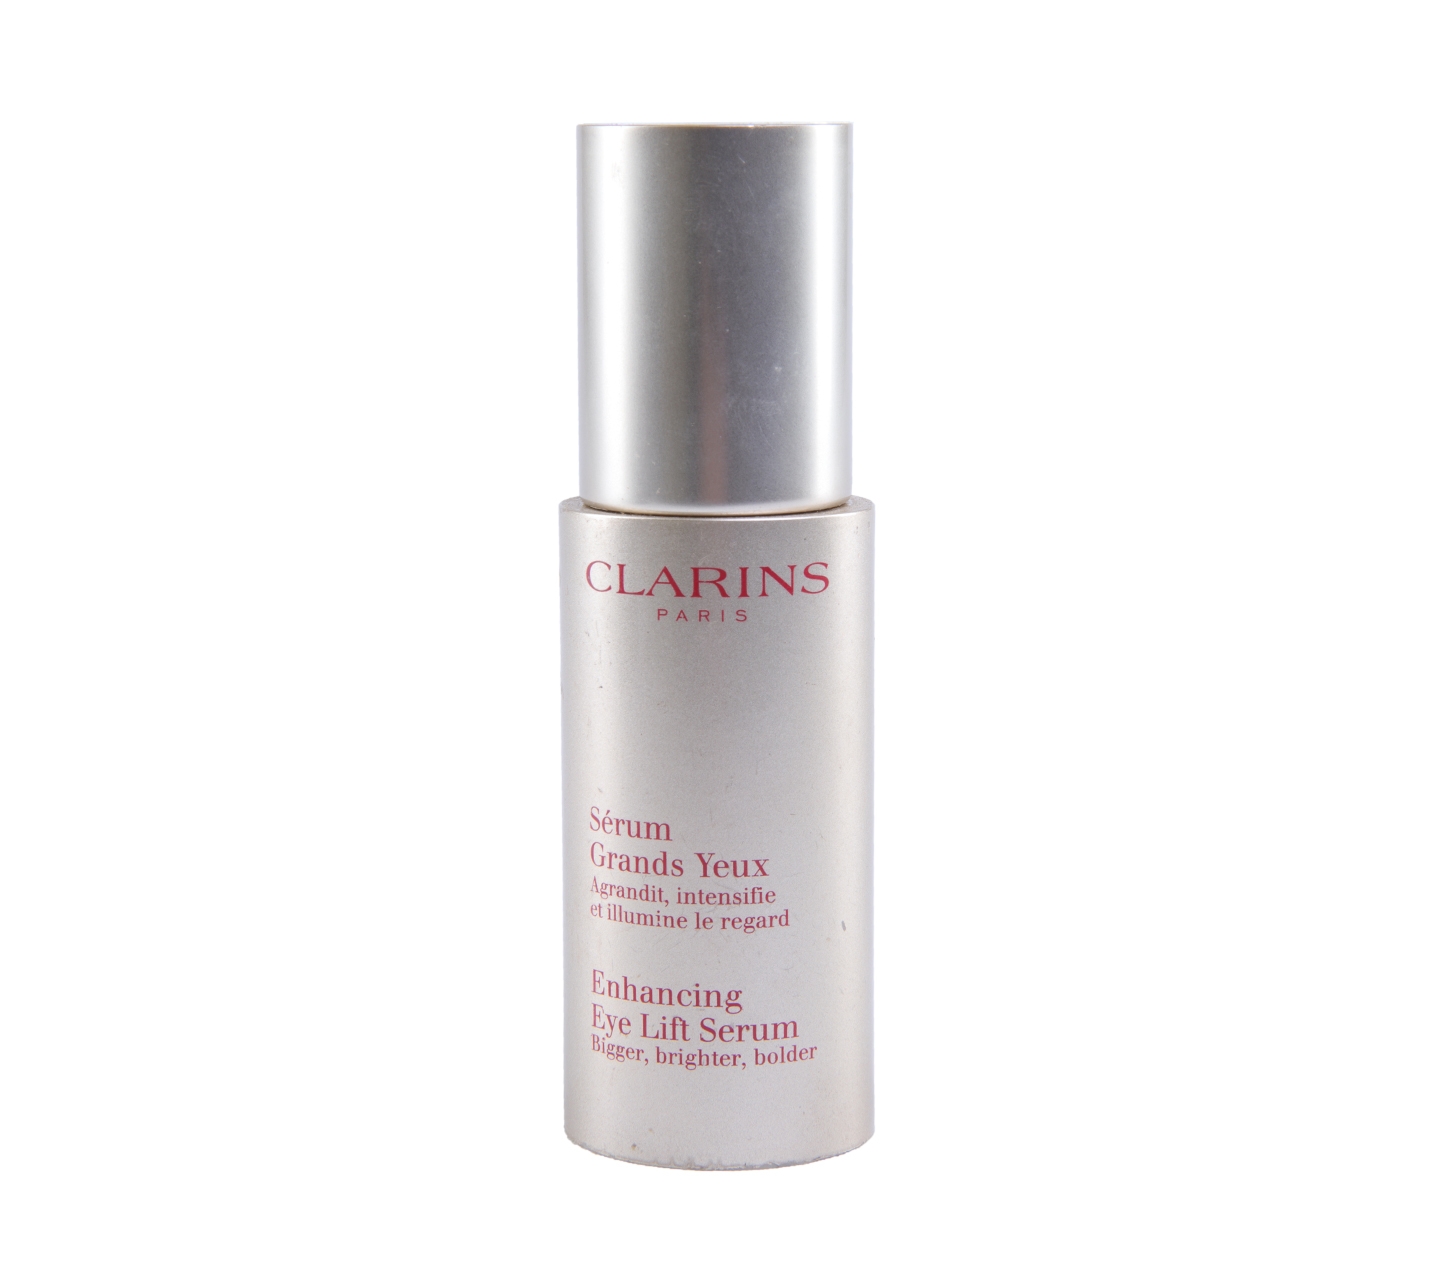 Clarins Serum Grands Yeux Enhancing Eye Lift Serum Skin Care